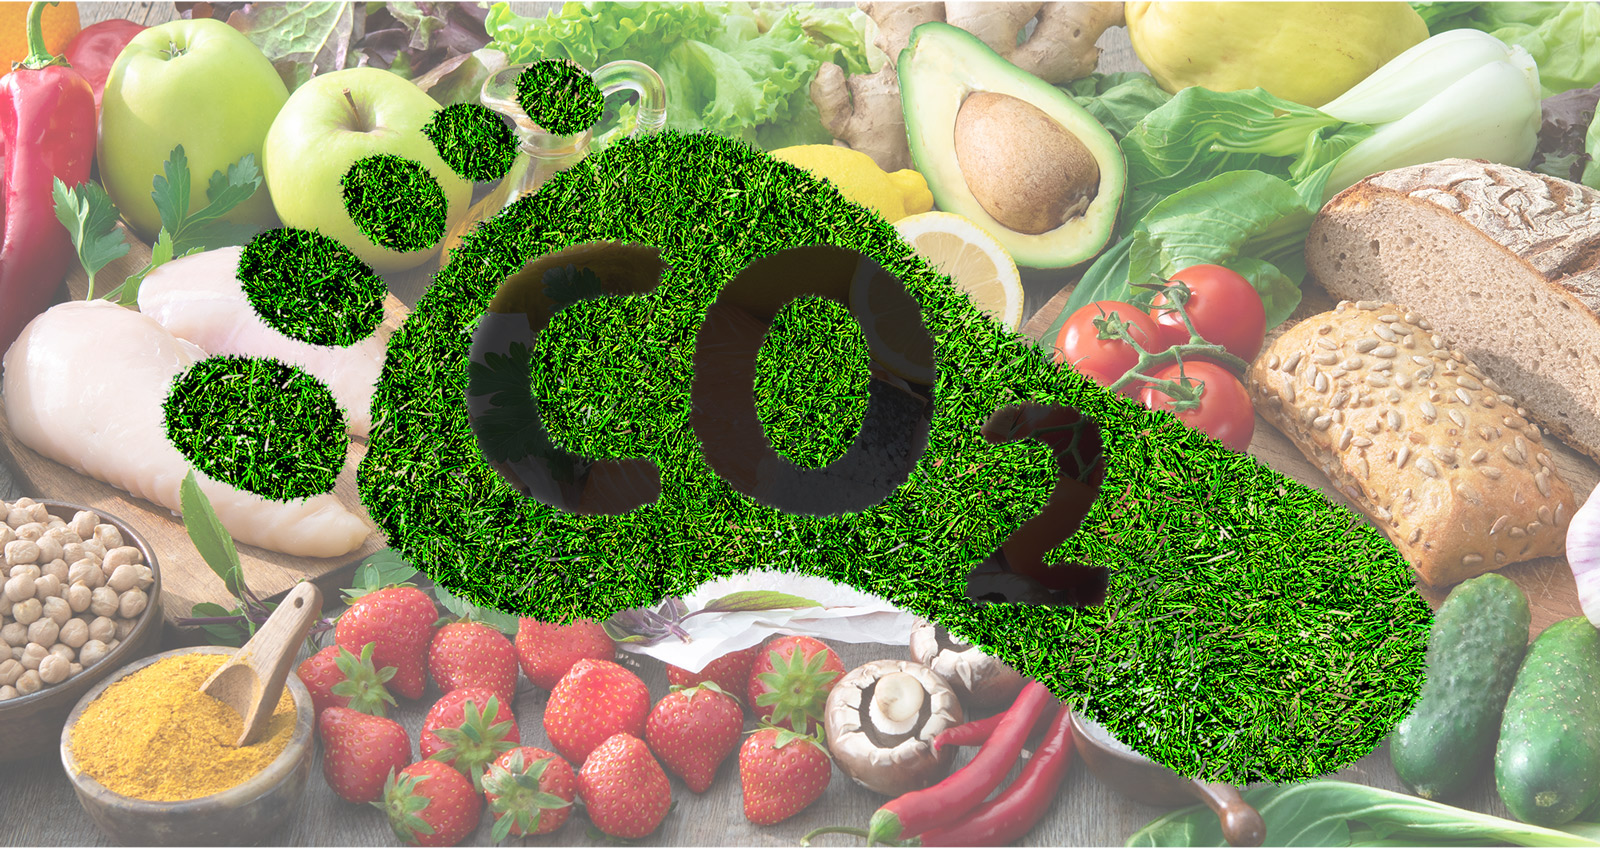 Ein Fuss aus Rasen in dem "CO 2" steht vor einem Hintergrund aus verschiedensten Nahrungsmitteln.